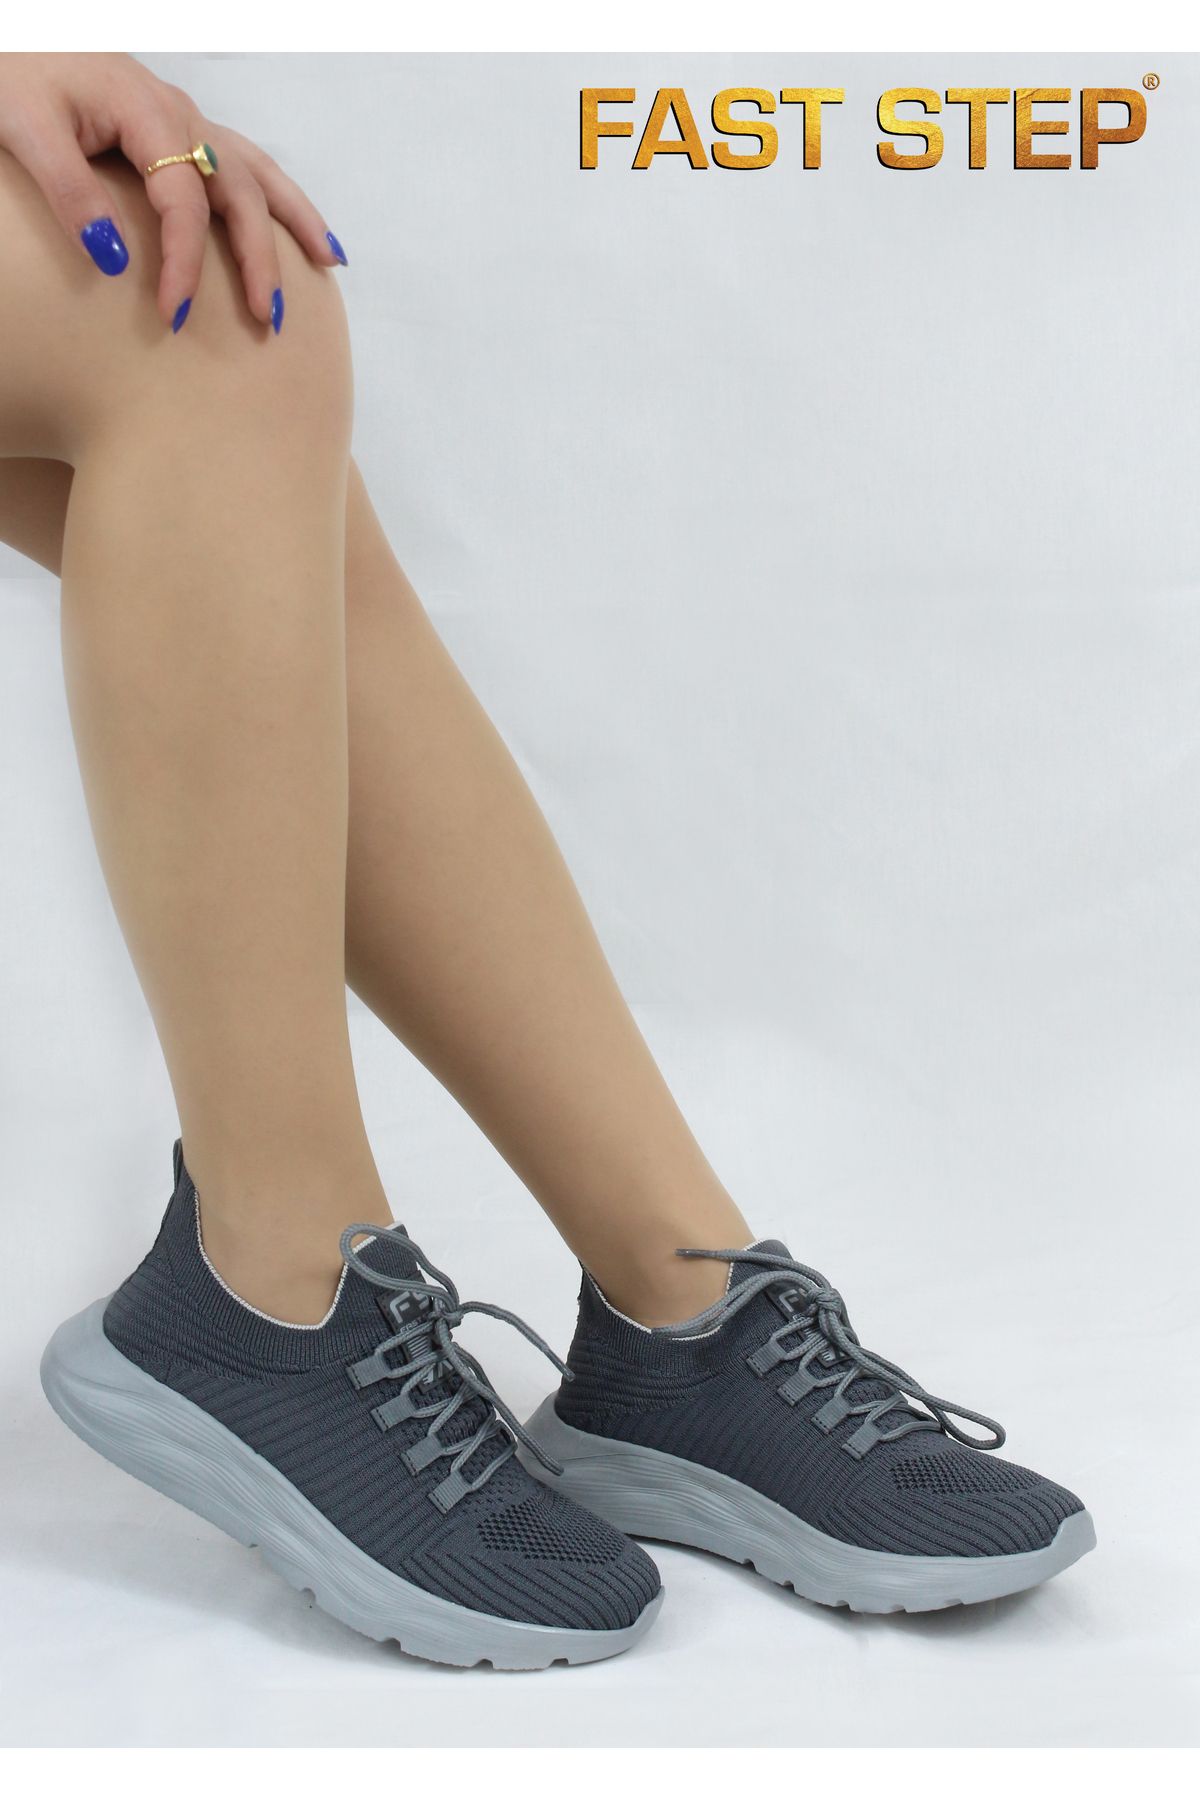 Fast Step Unisex Anatomik Taban Günlük Garantili Yürüyüş Koşu Sneaker Spor Ayakkabı 925xa68